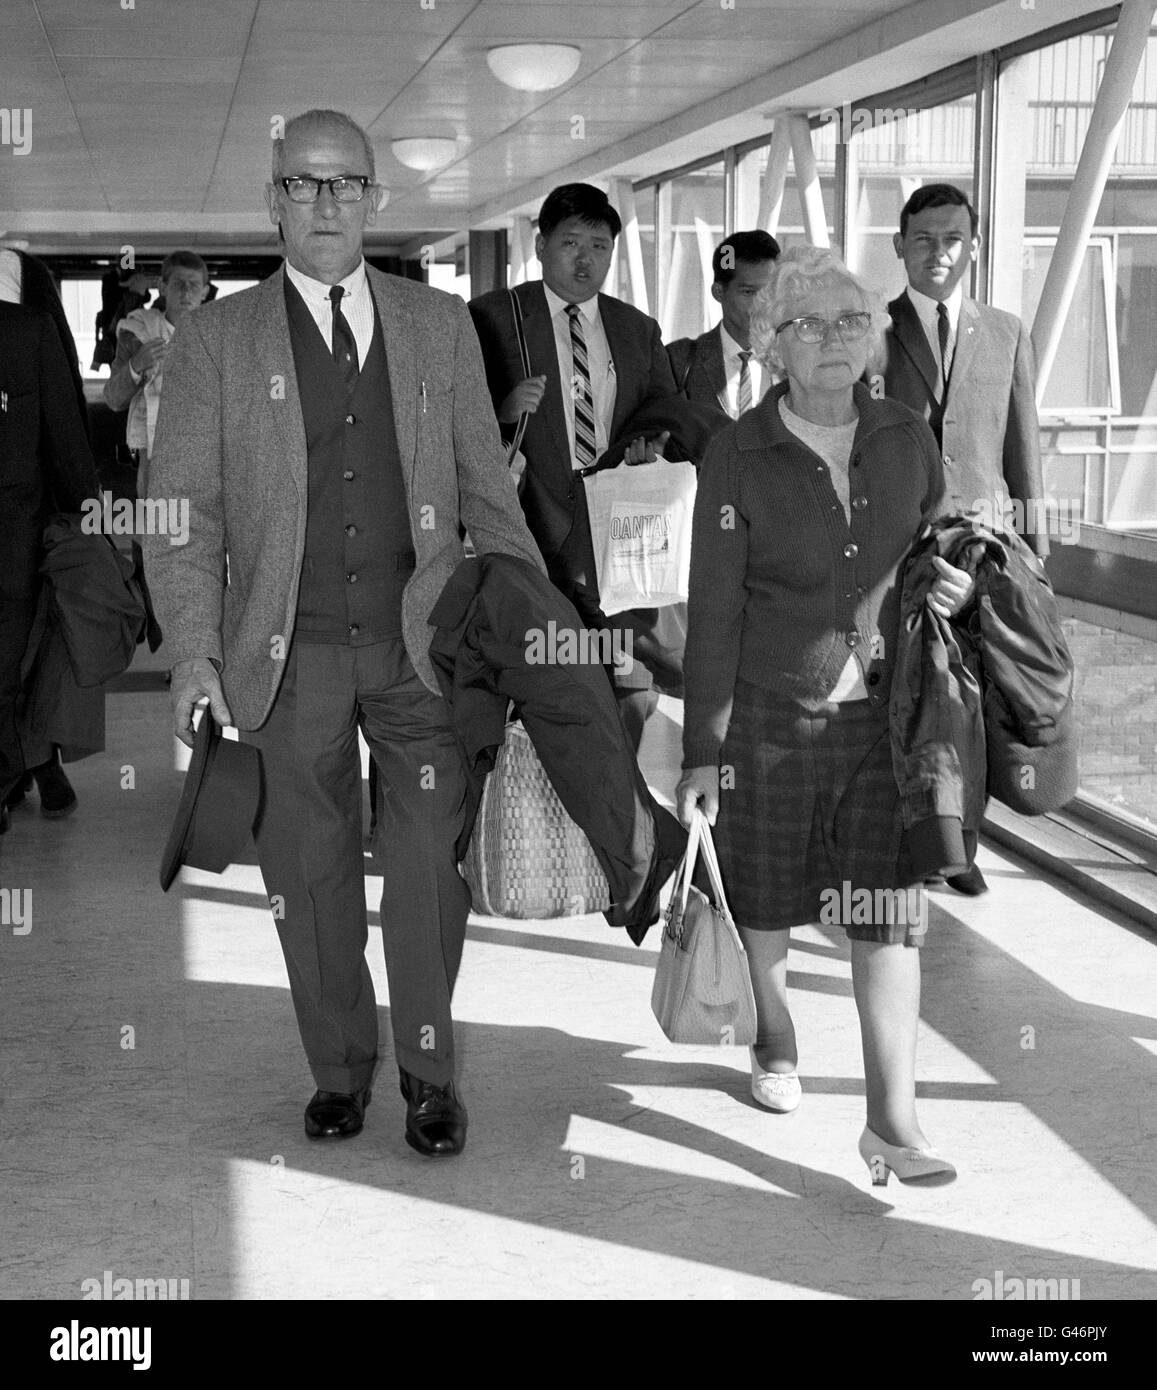 Harold Larwood, der große Schnellbowler von Nottinghamshire und England, mit seiner Frau Lois am Flughafen Heathrow, nachdem er aus Australien eingeflogen war. Stockfoto